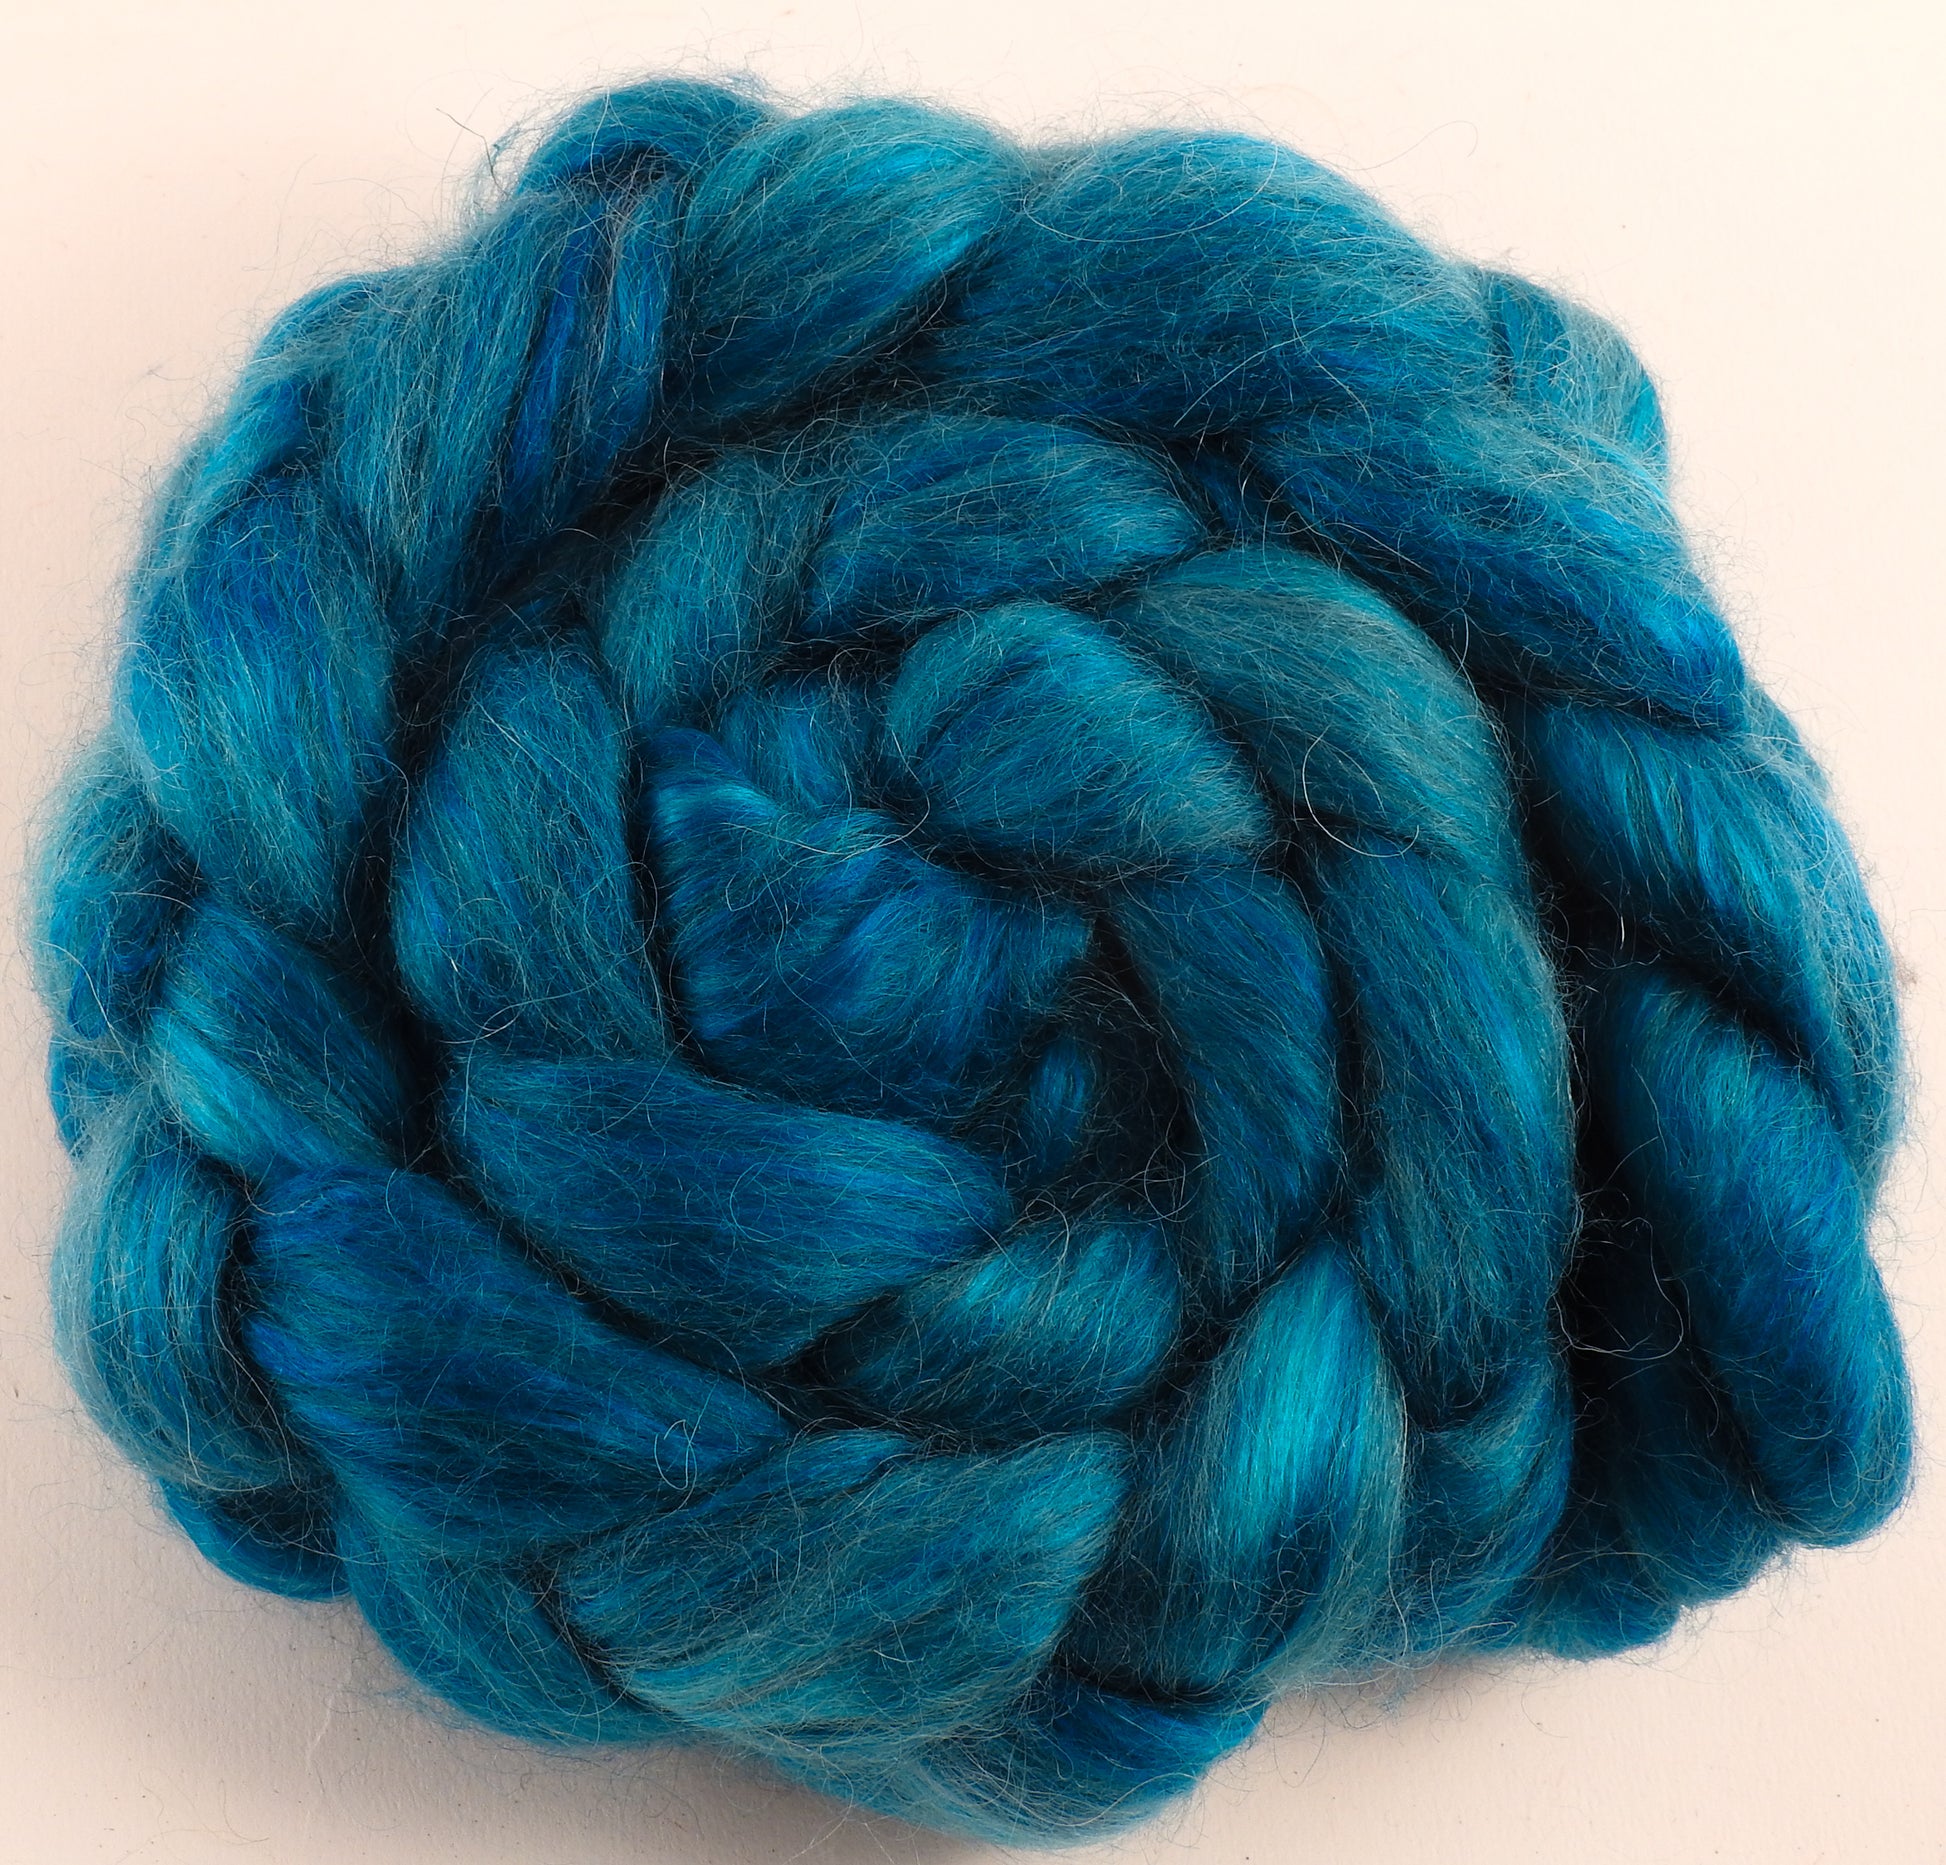 Hand-dyed wensleydale/ mulberry silk roving (65/35) - Poseidon - (5.1 oz.) - Inglenook Fibers